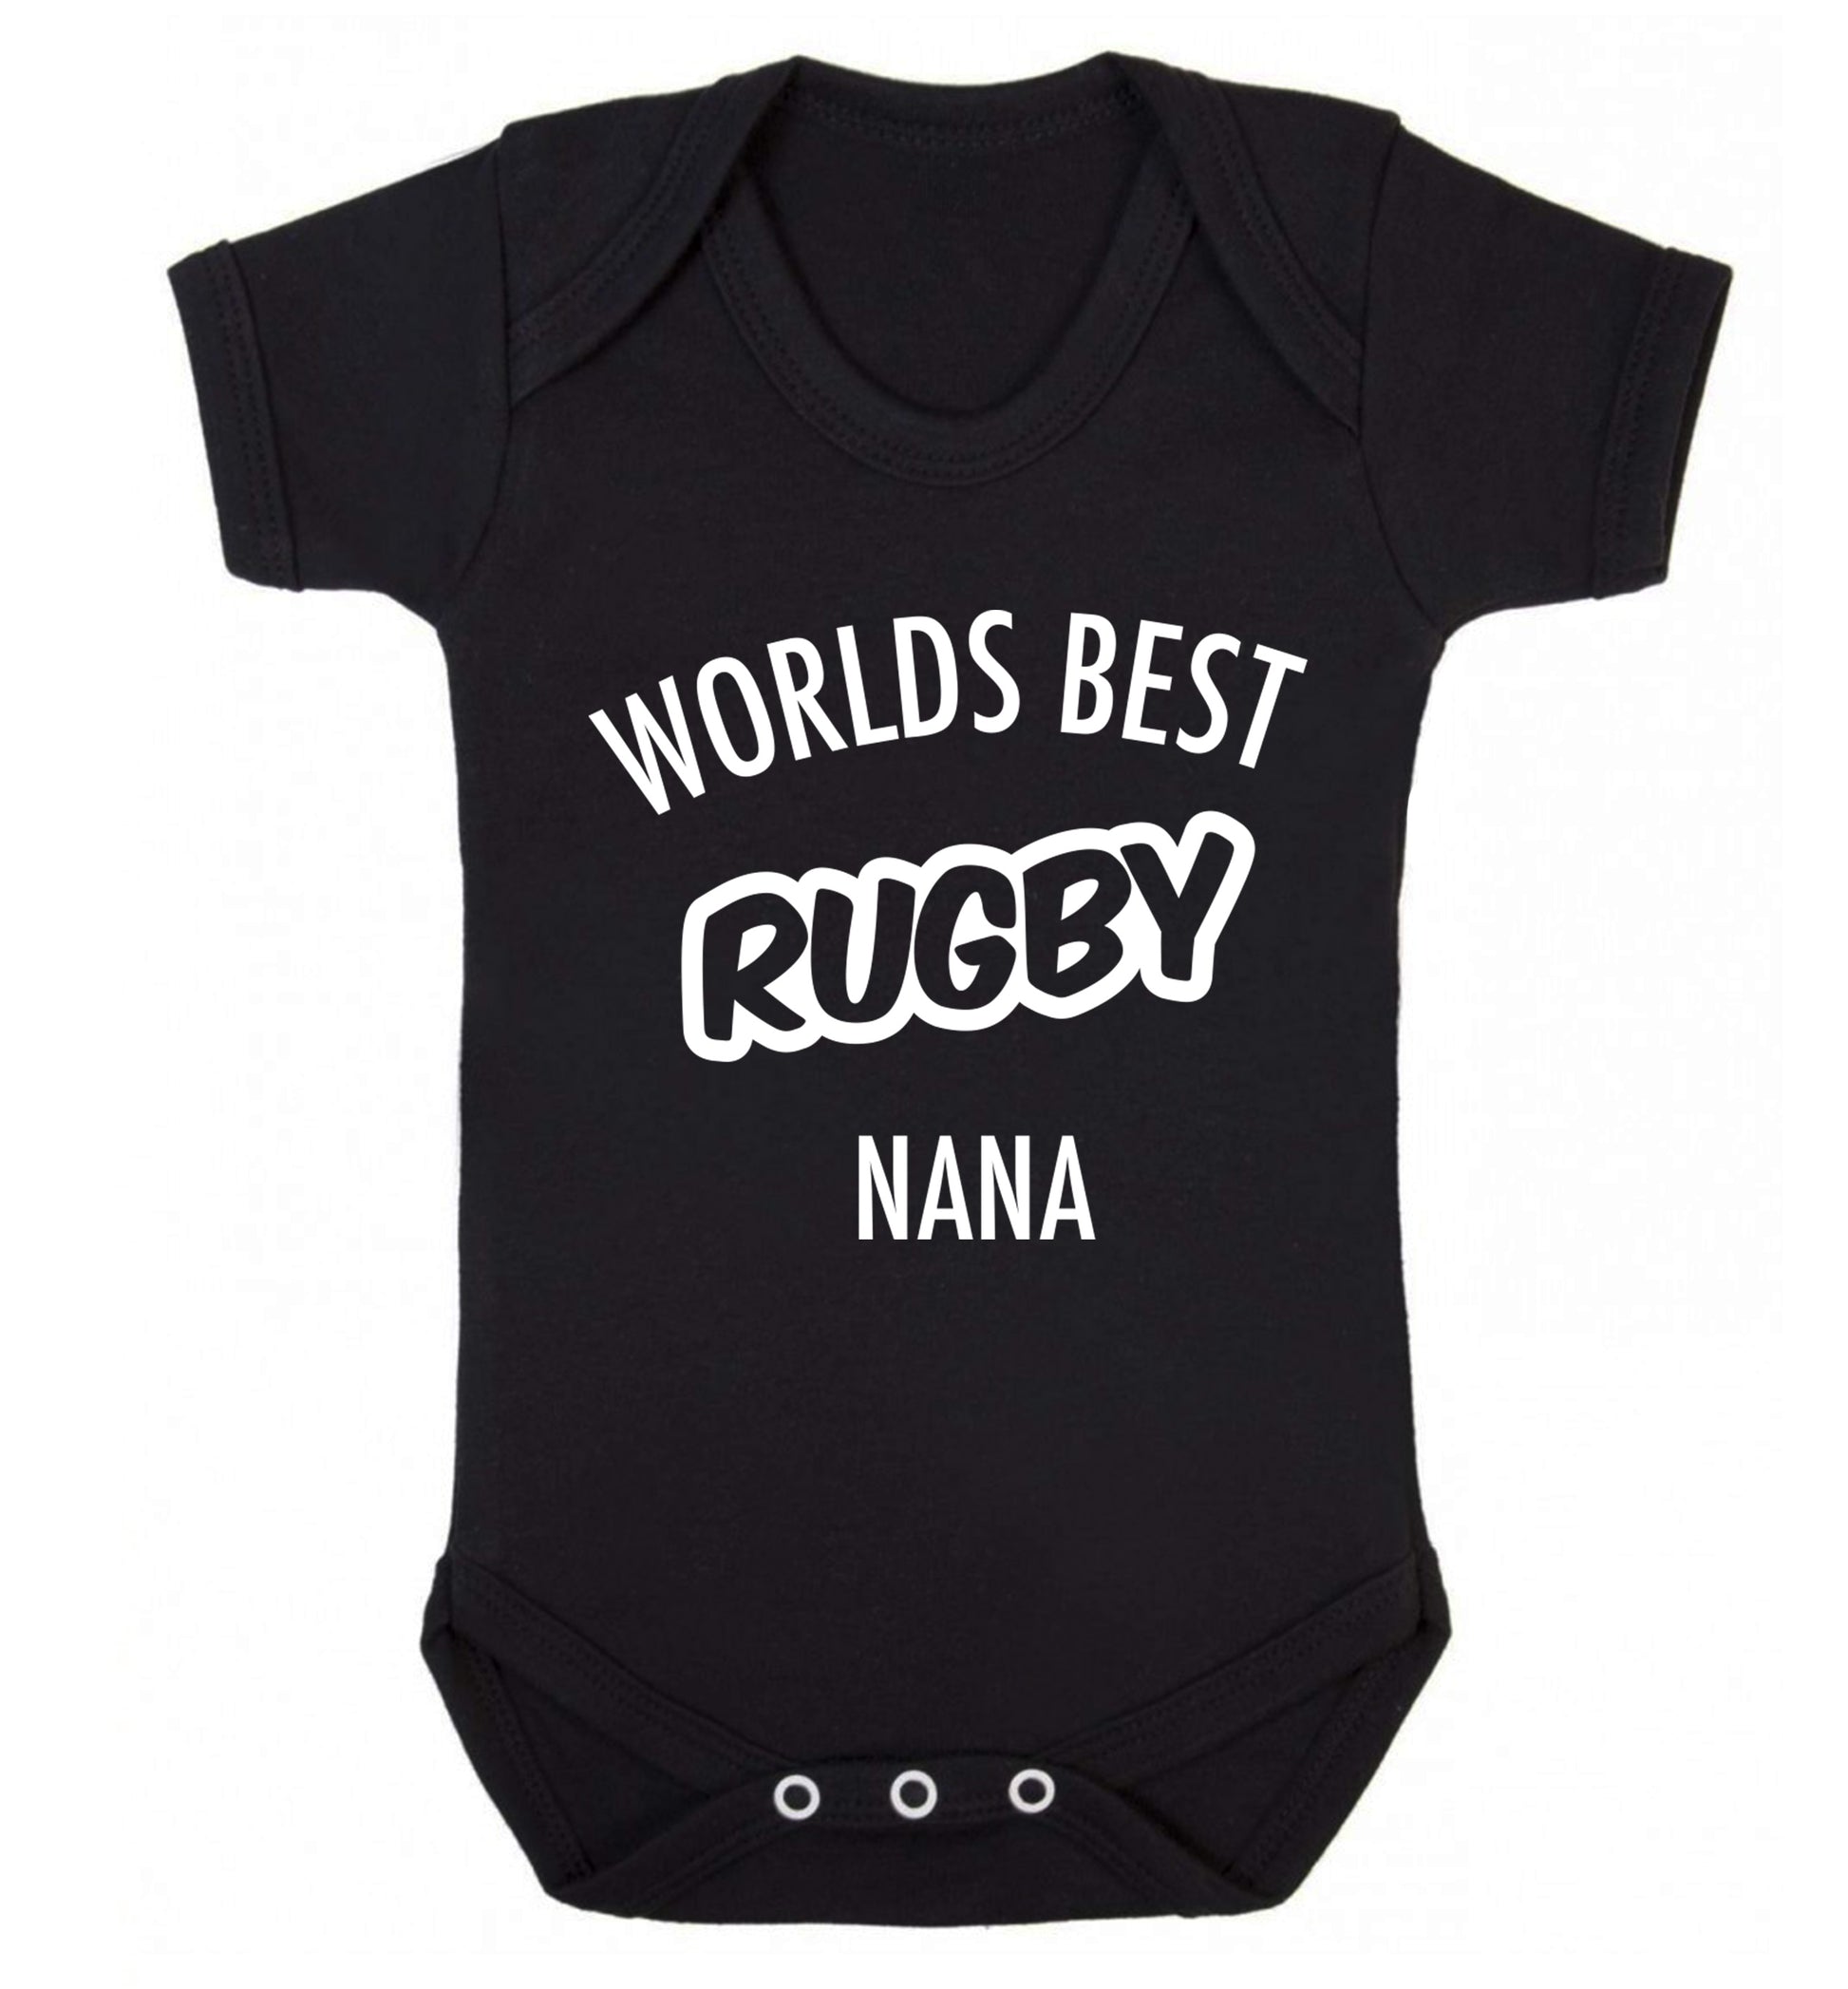 Worlds Best Rugby Grandma Baby Vest black 18-24 months